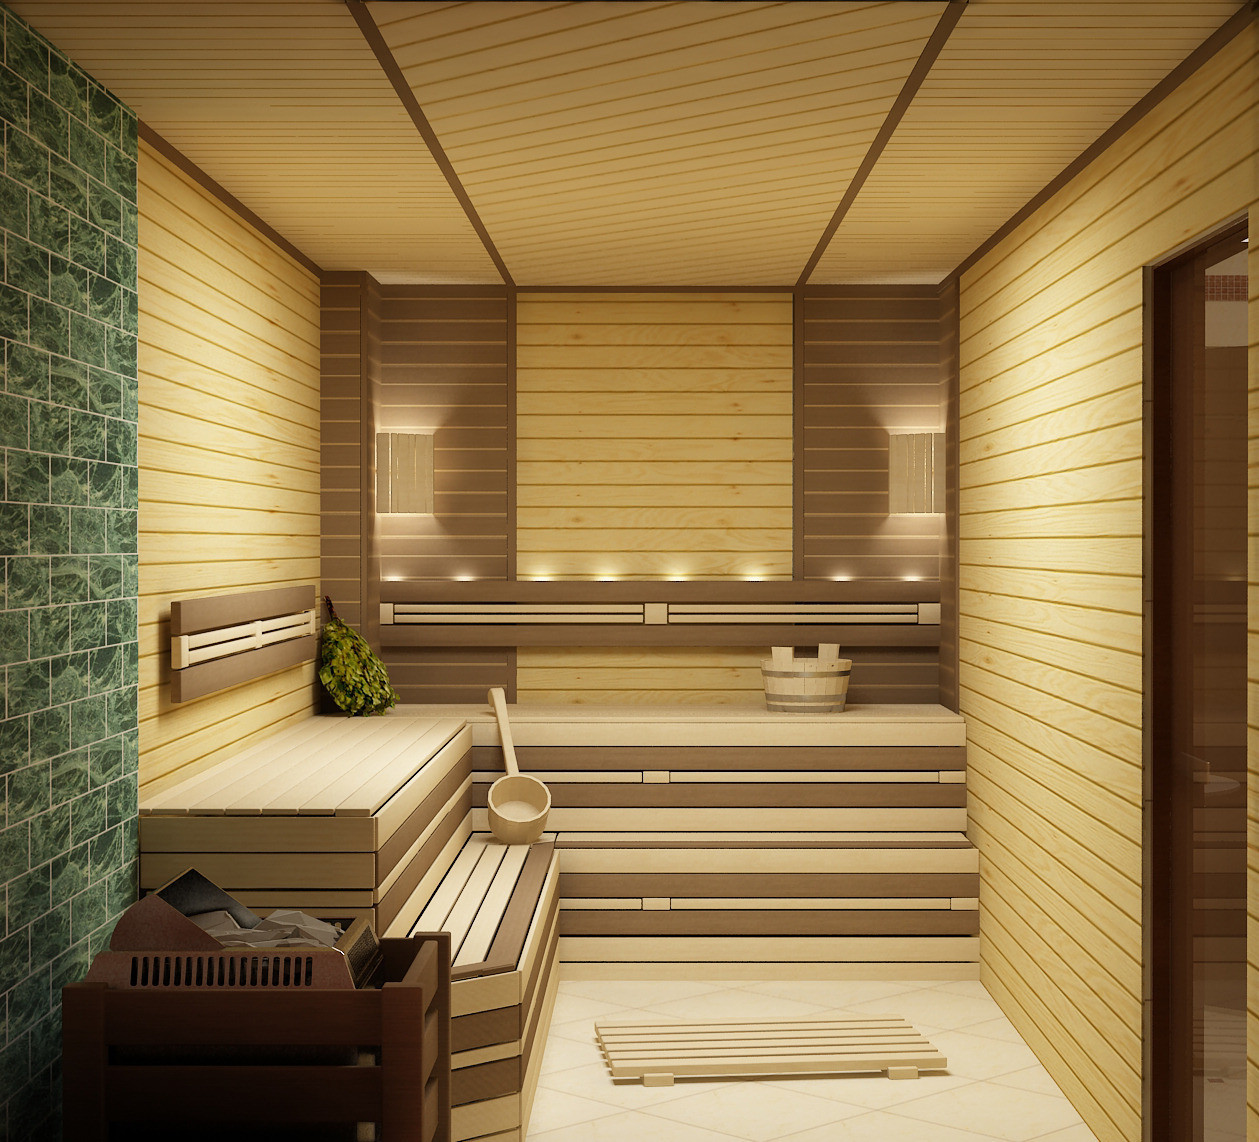 Дизайн бани с комнатой отдыха внутри, идеи для бани своими руками, отделка парилки внутри